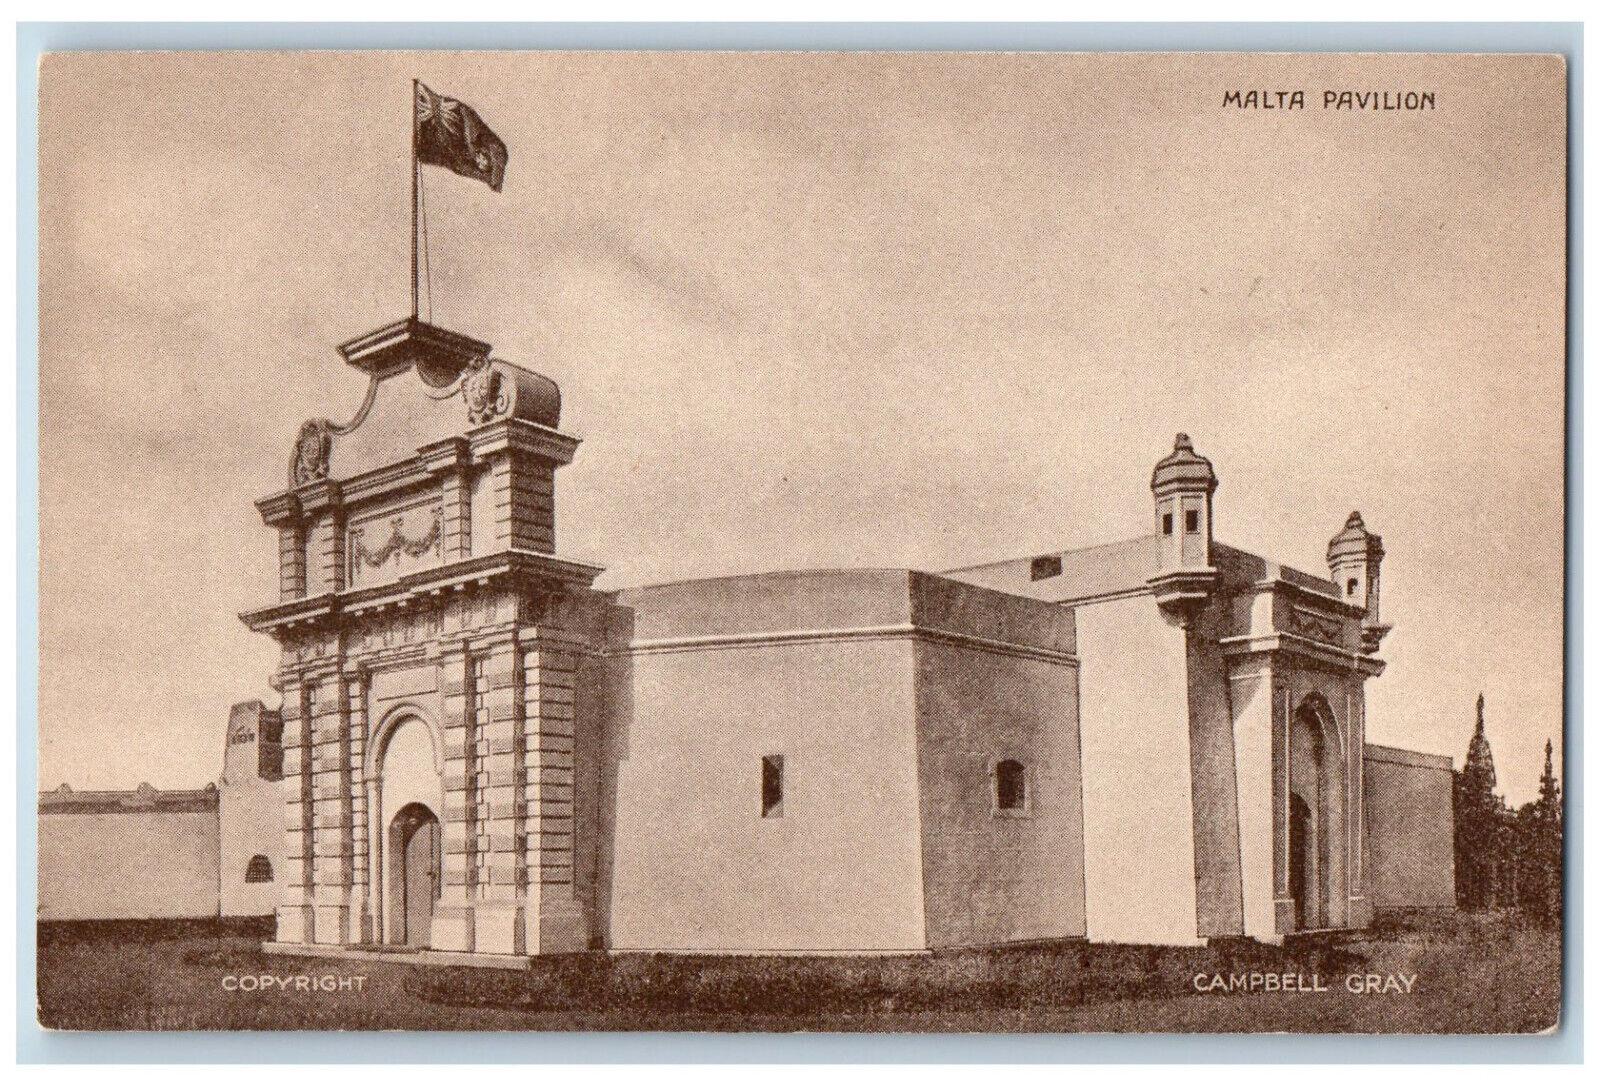 Malta Postcard Malta Pavilion British Empire Exhibition Campbell Gray 1924